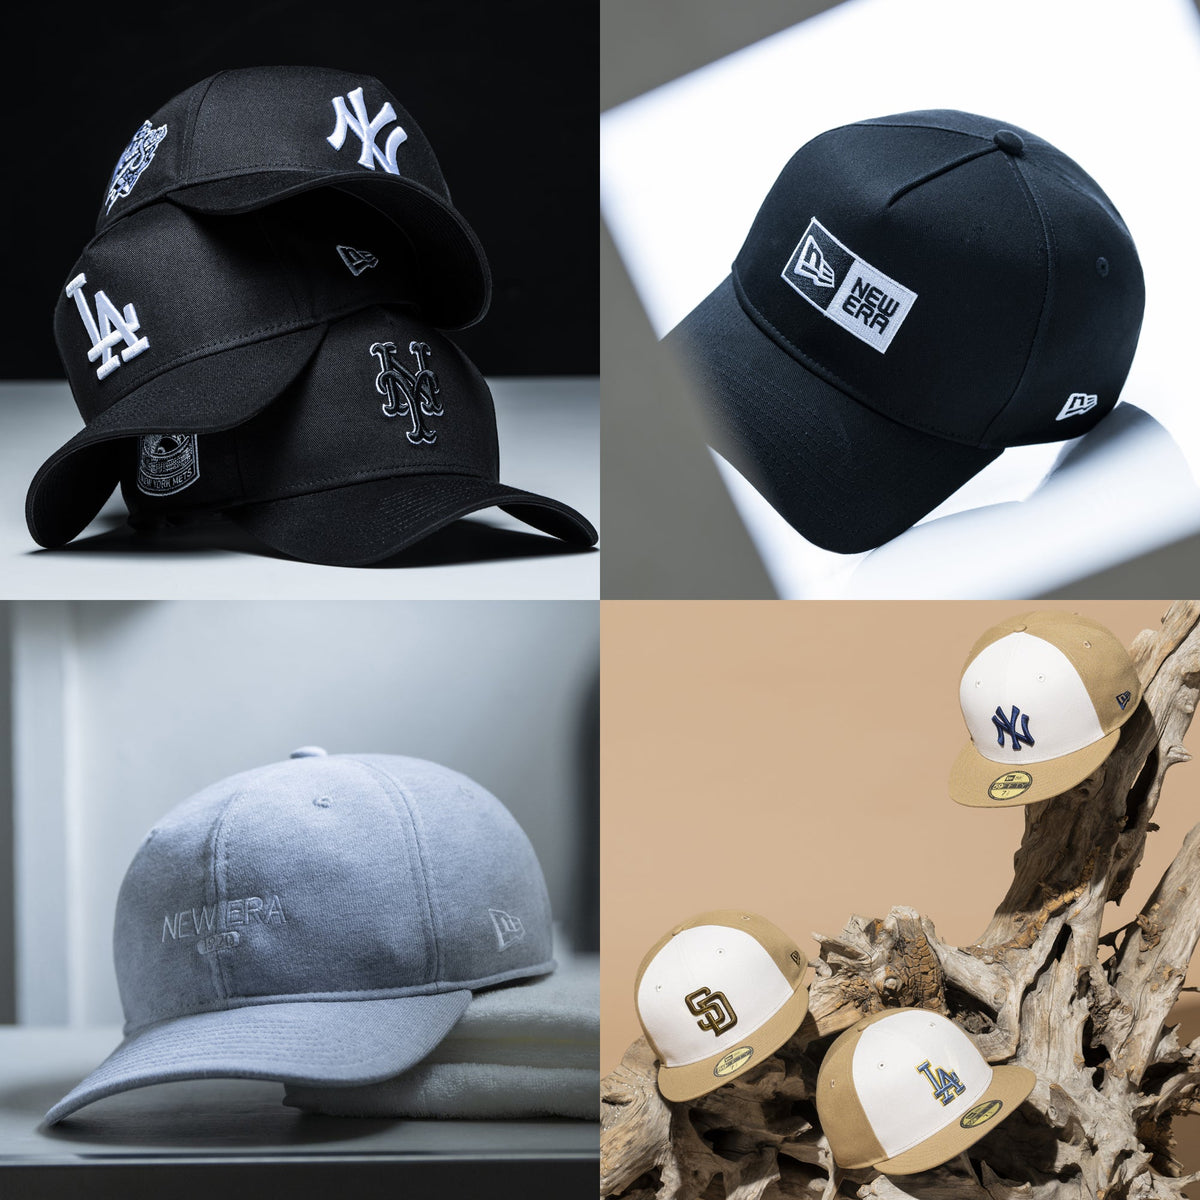 1/16 10:00 発売 MLB Black & White / Tri-Color / Box Logo / Kid's